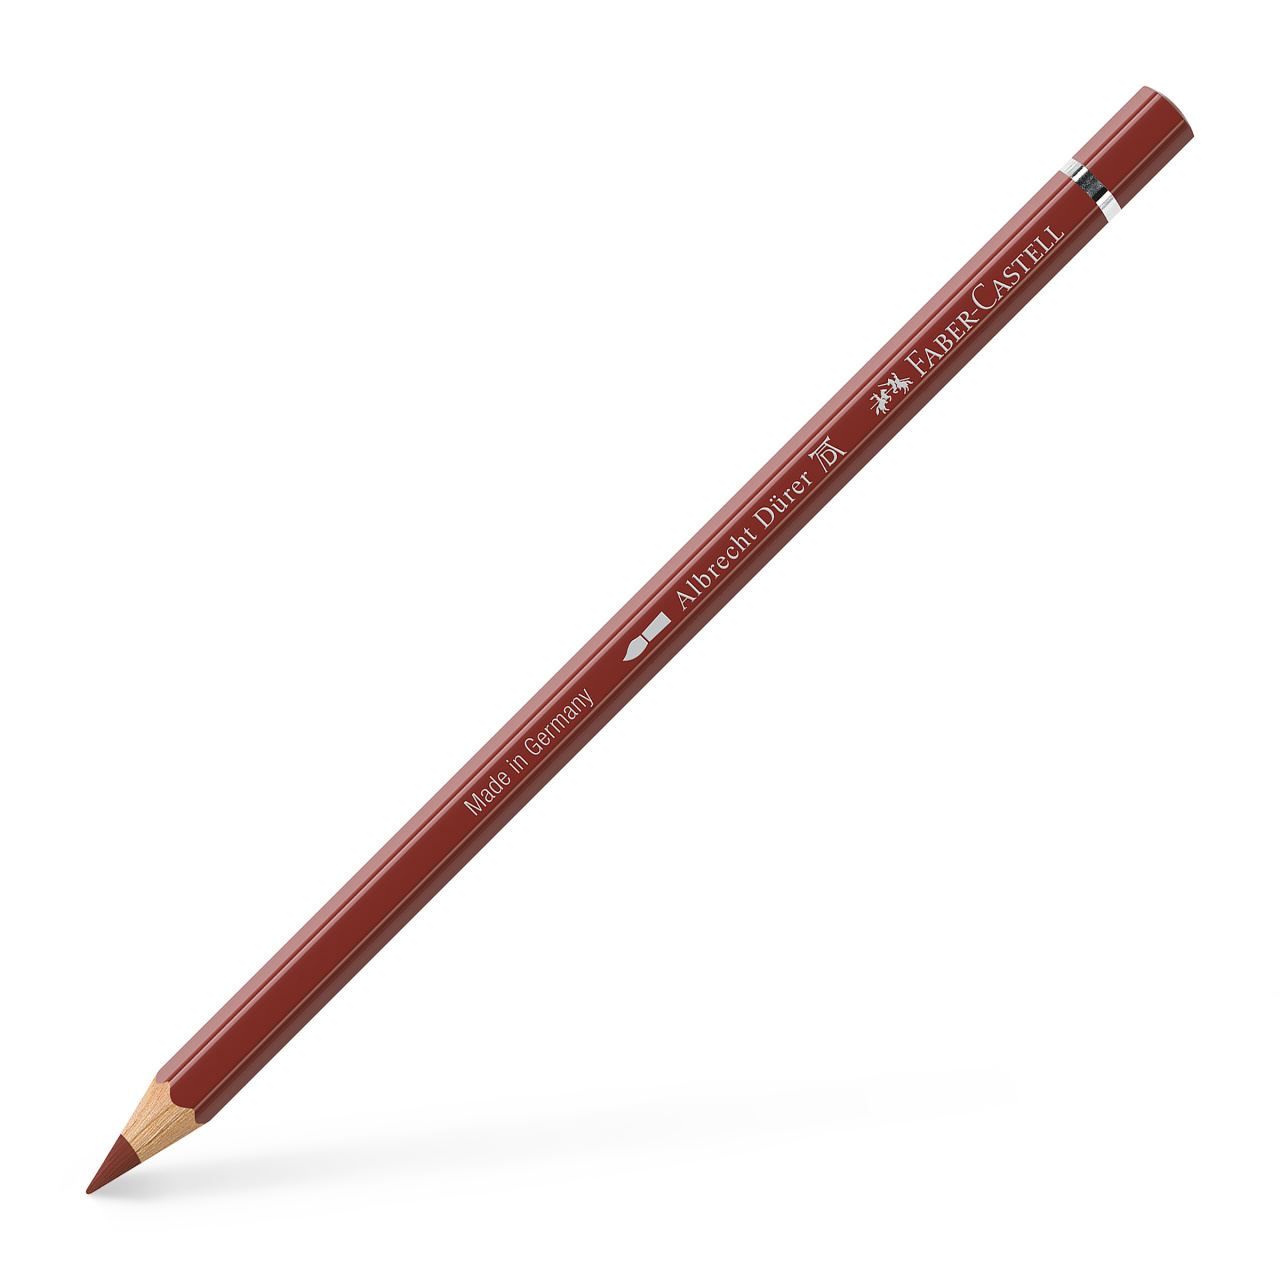 Faber-Castell - アルブレヒト・デューラー水彩色鉛筆・単色（インディアンレッド）